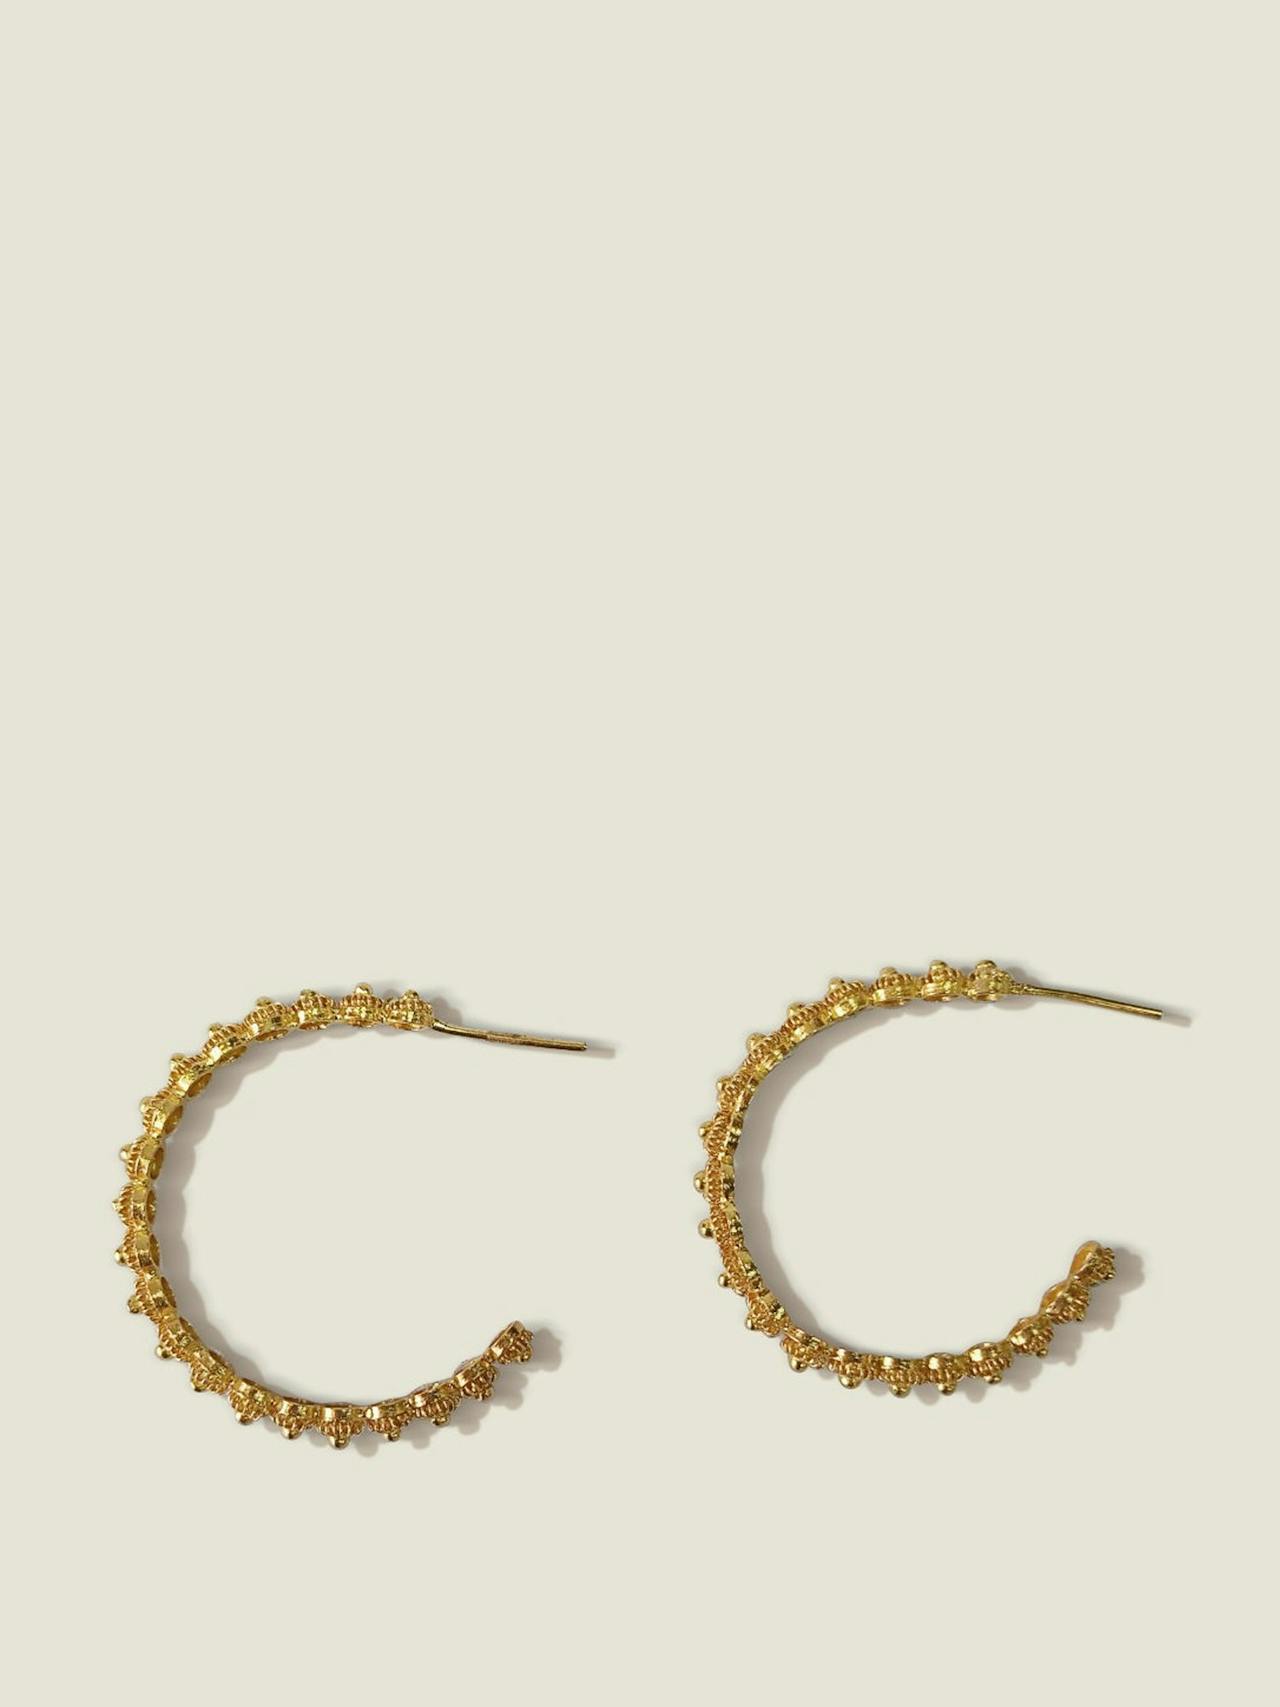 Large gold/silver hoop earrings